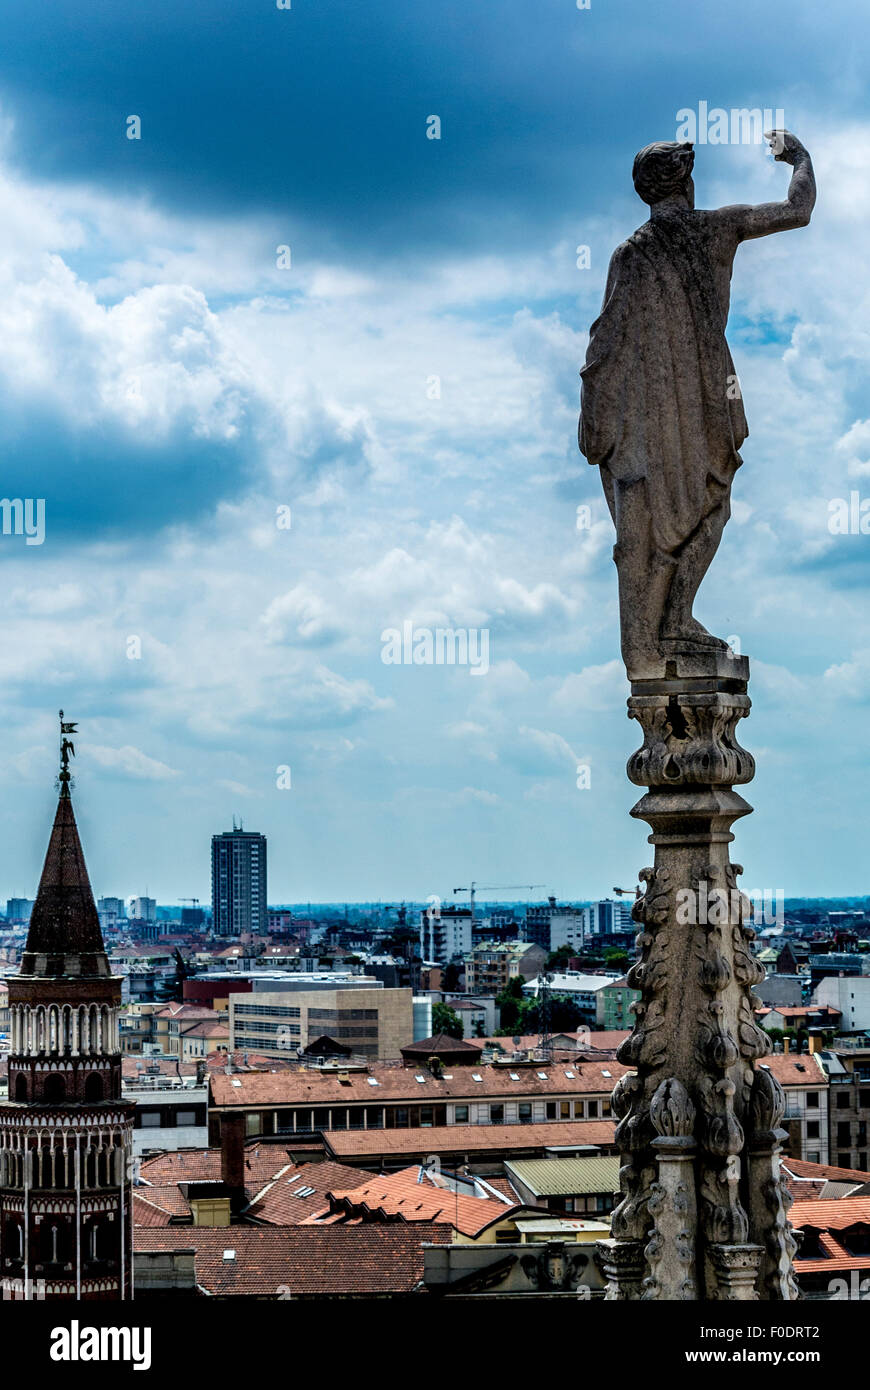 Statua sul tetto del Duomo di Milano. Foto Stock